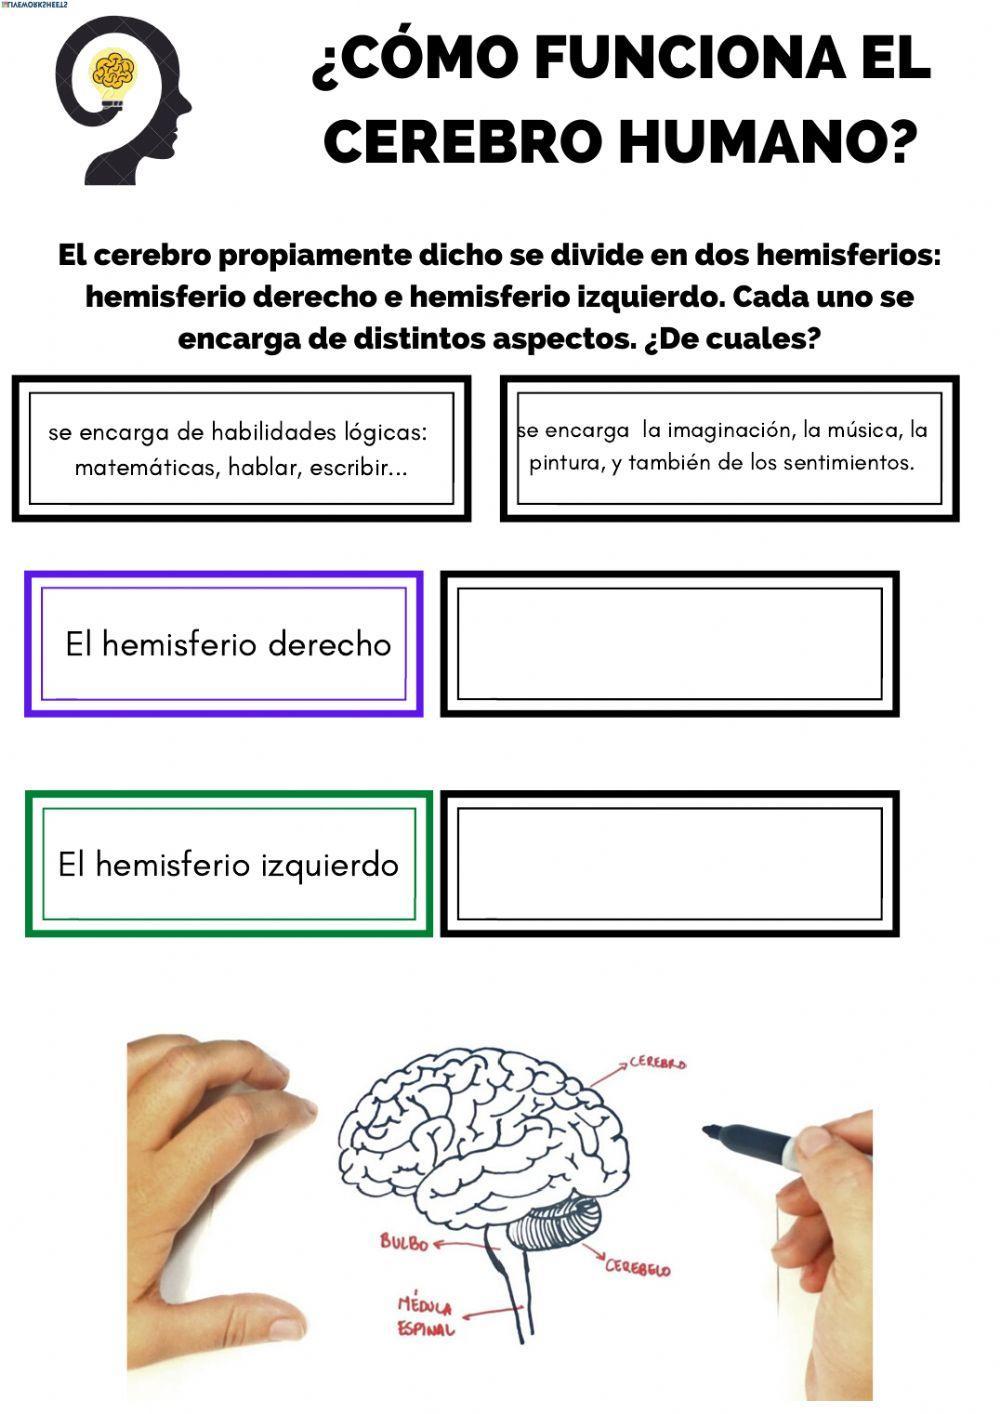 Como funciona el cerebro humano